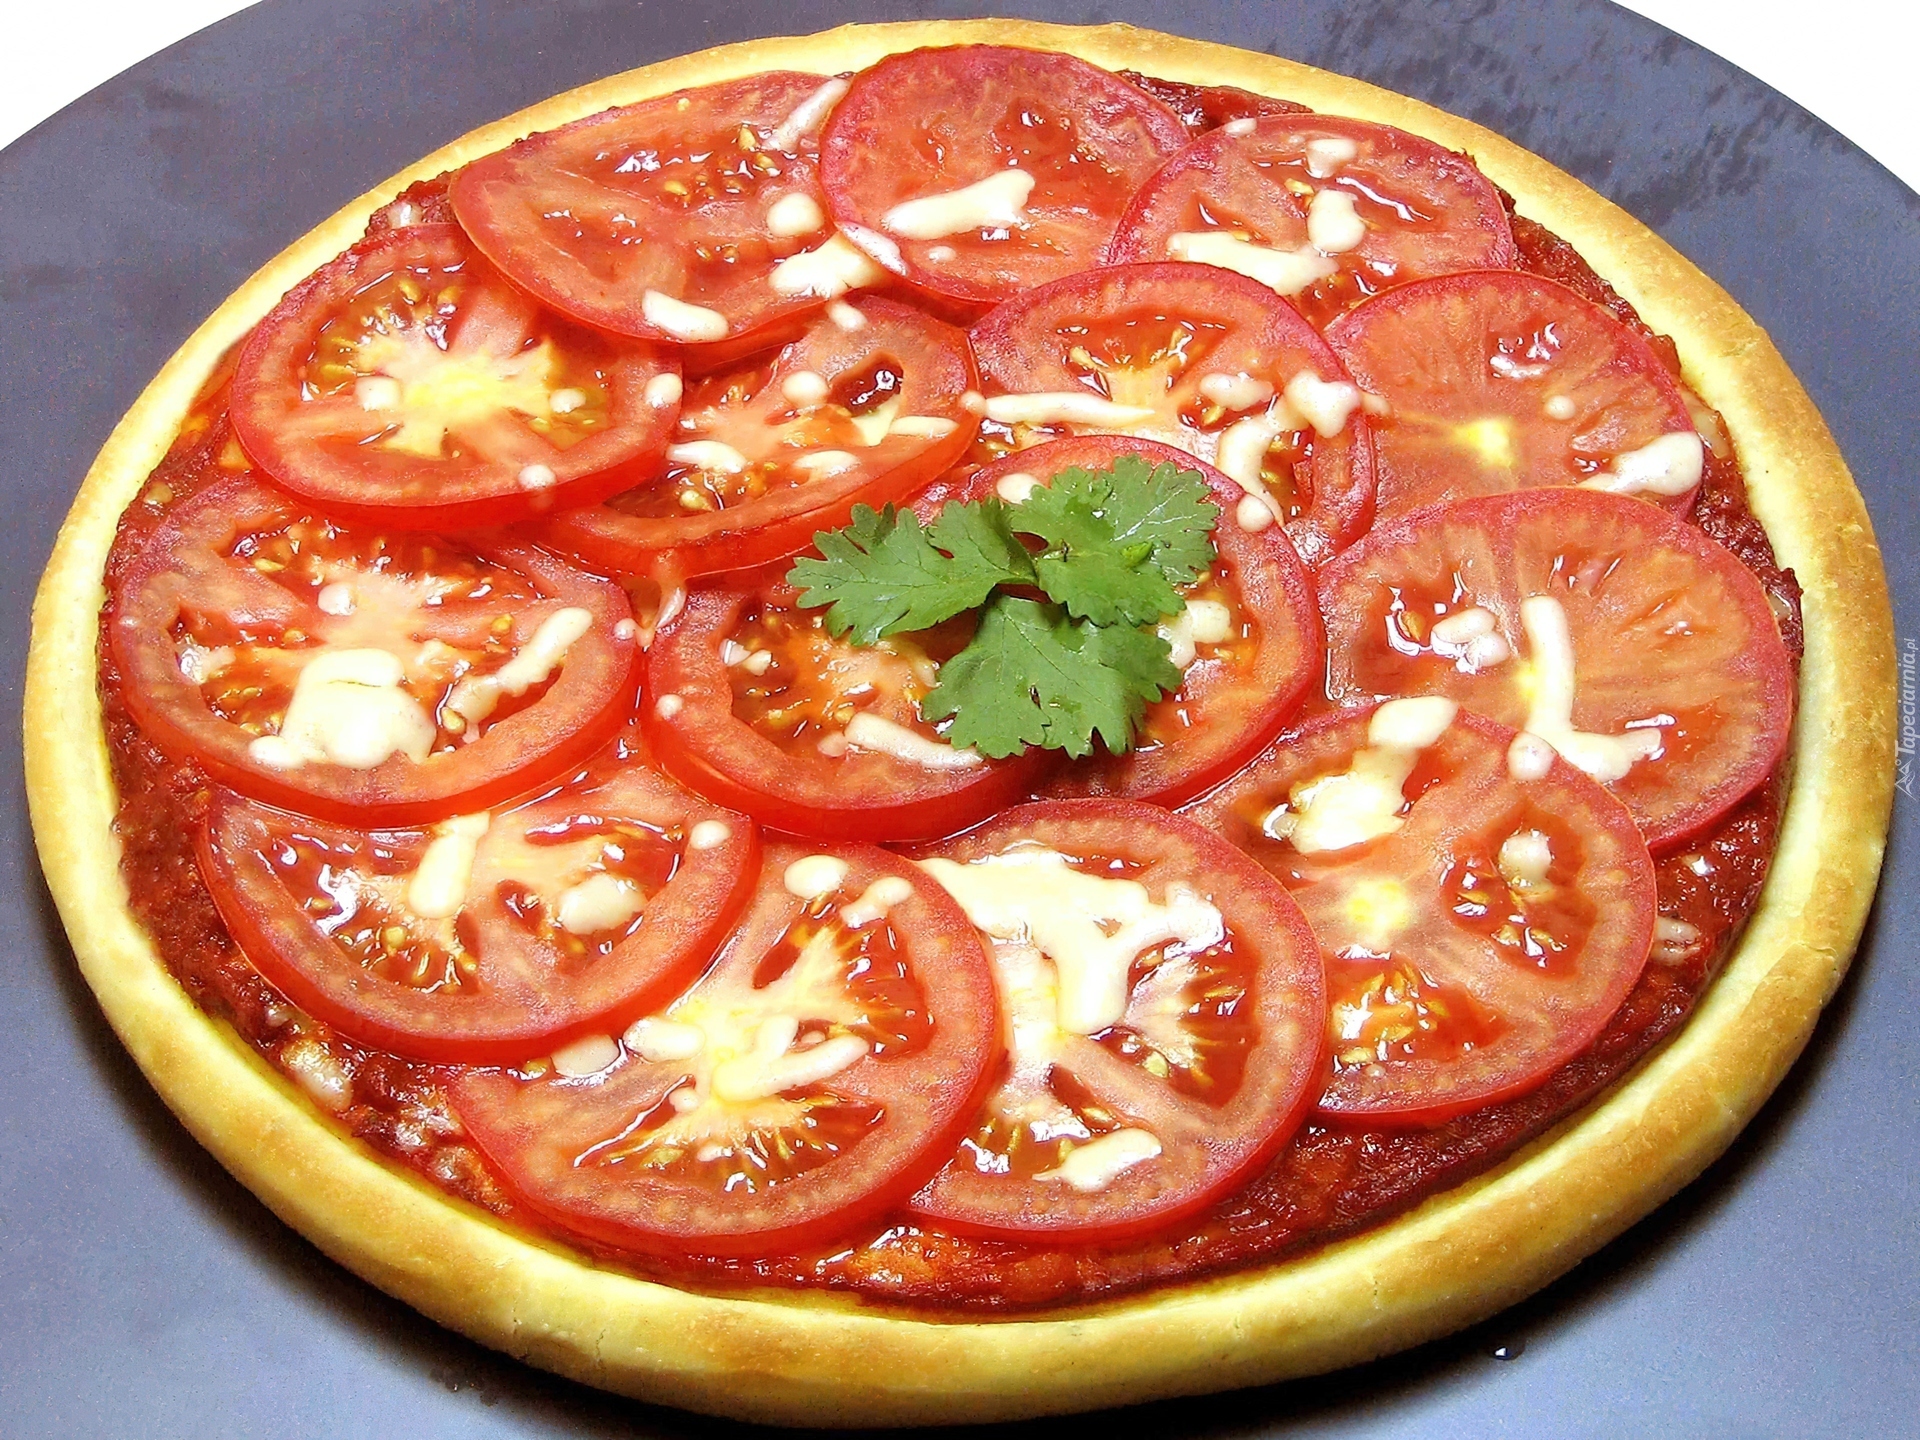 Pizza, Pomidory